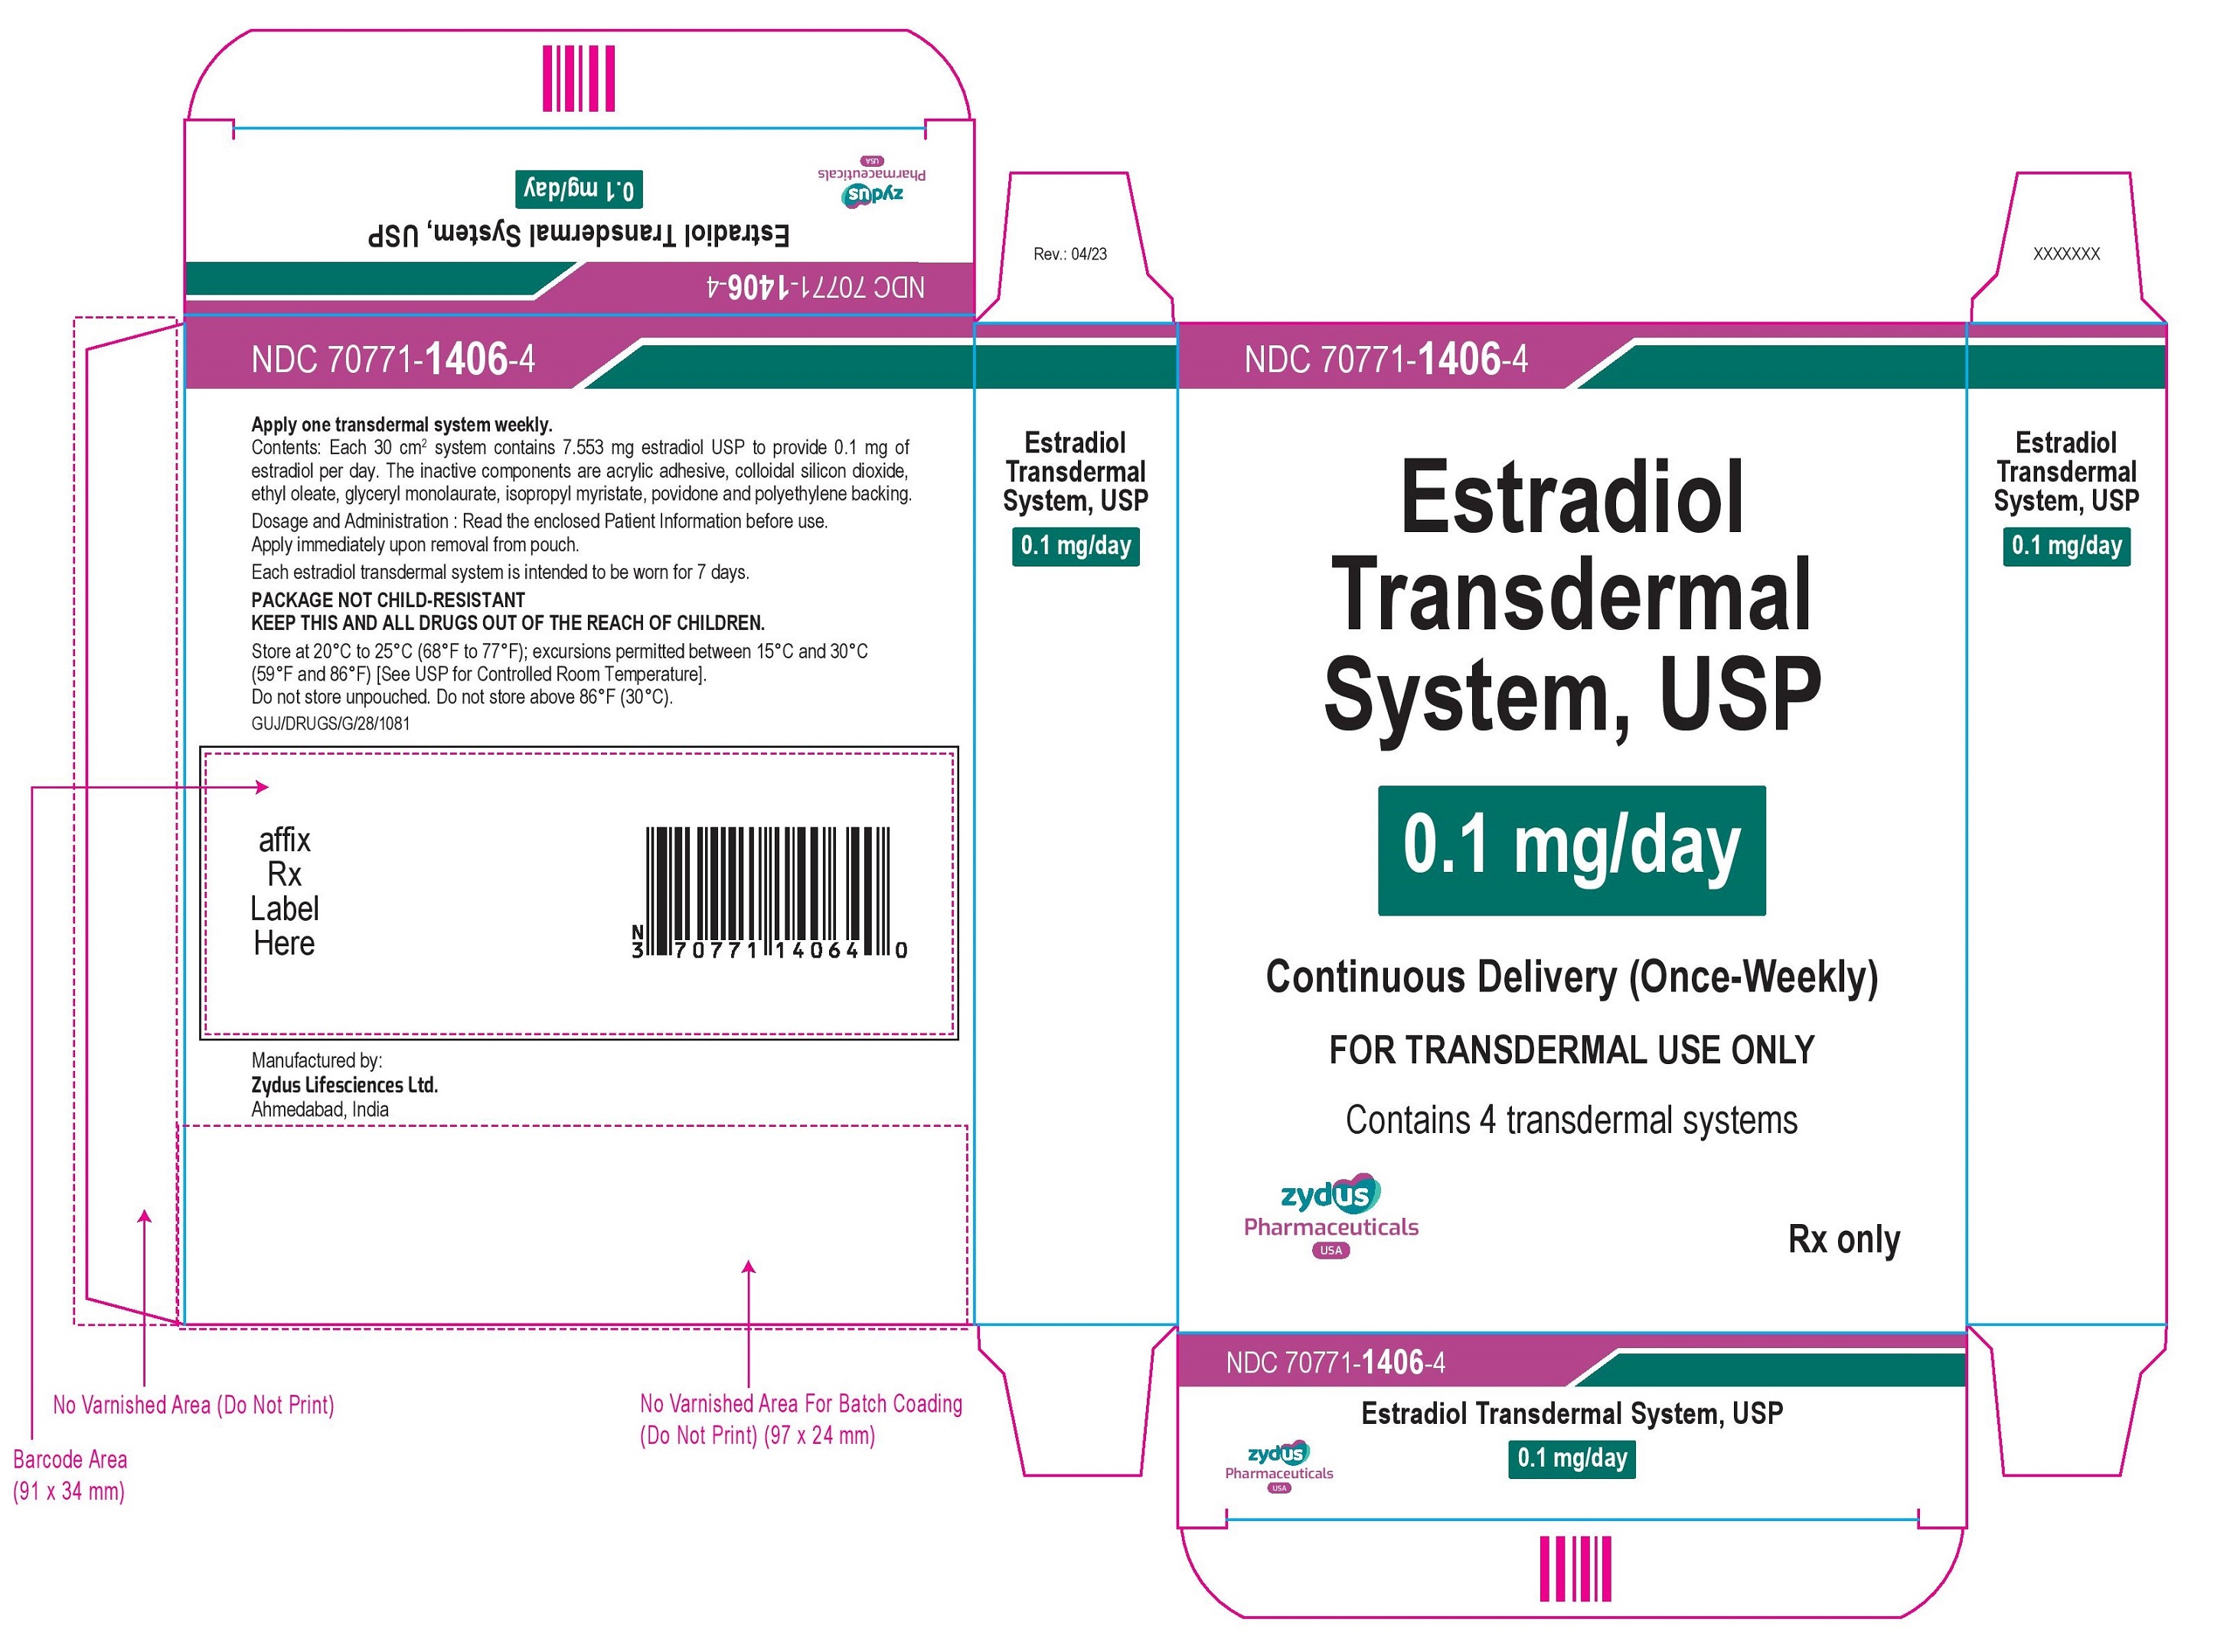 Estradiol Transdermal System USP, 0.1mg per day